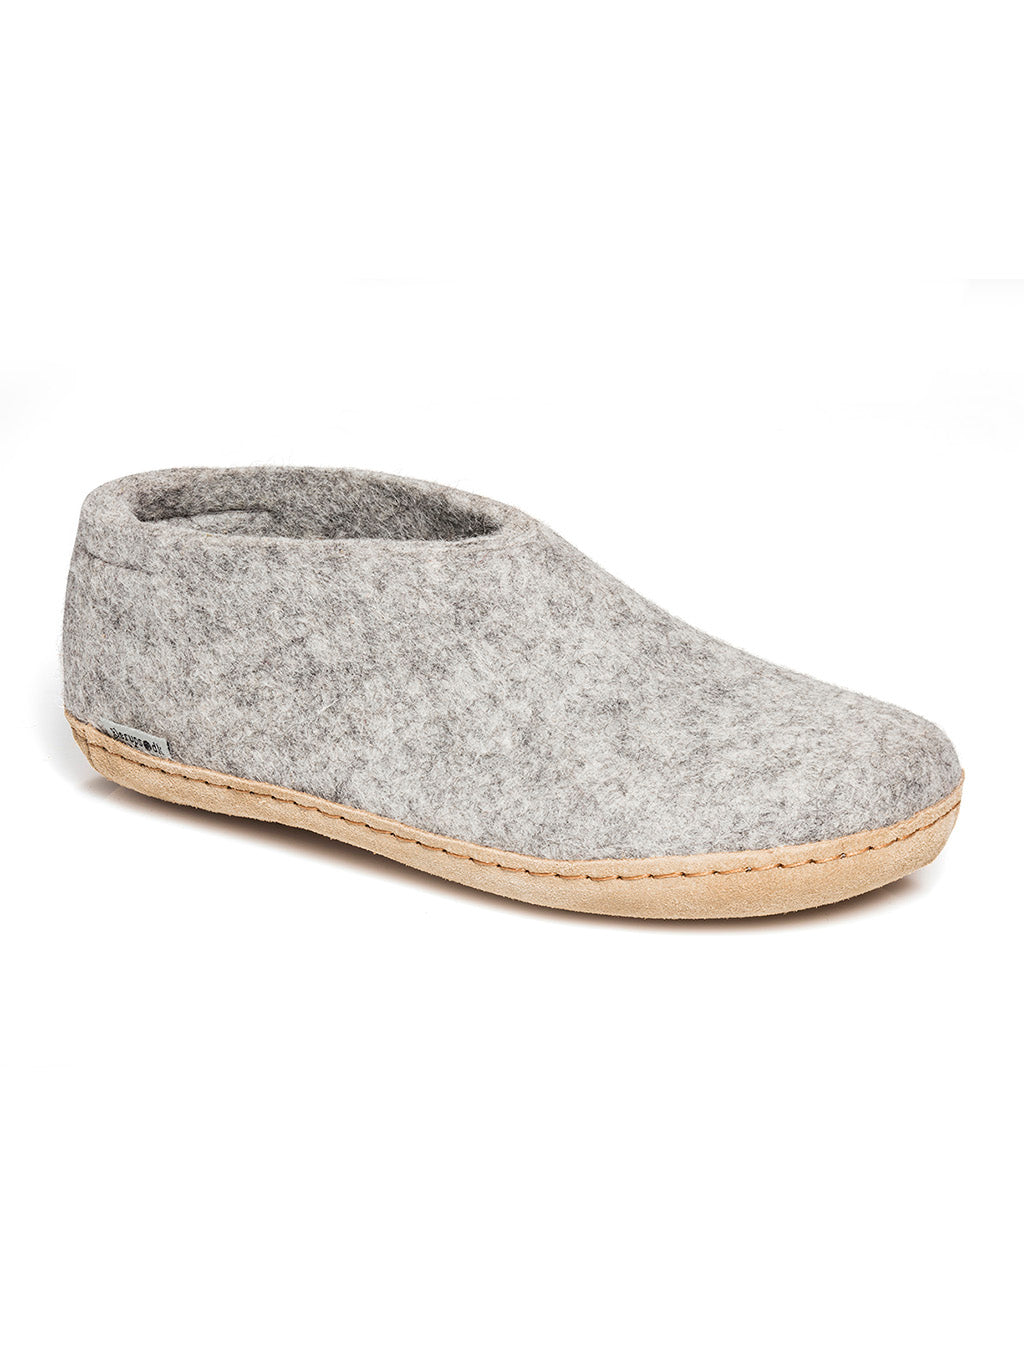 Chaussure de laine grise avec semelle en cuir